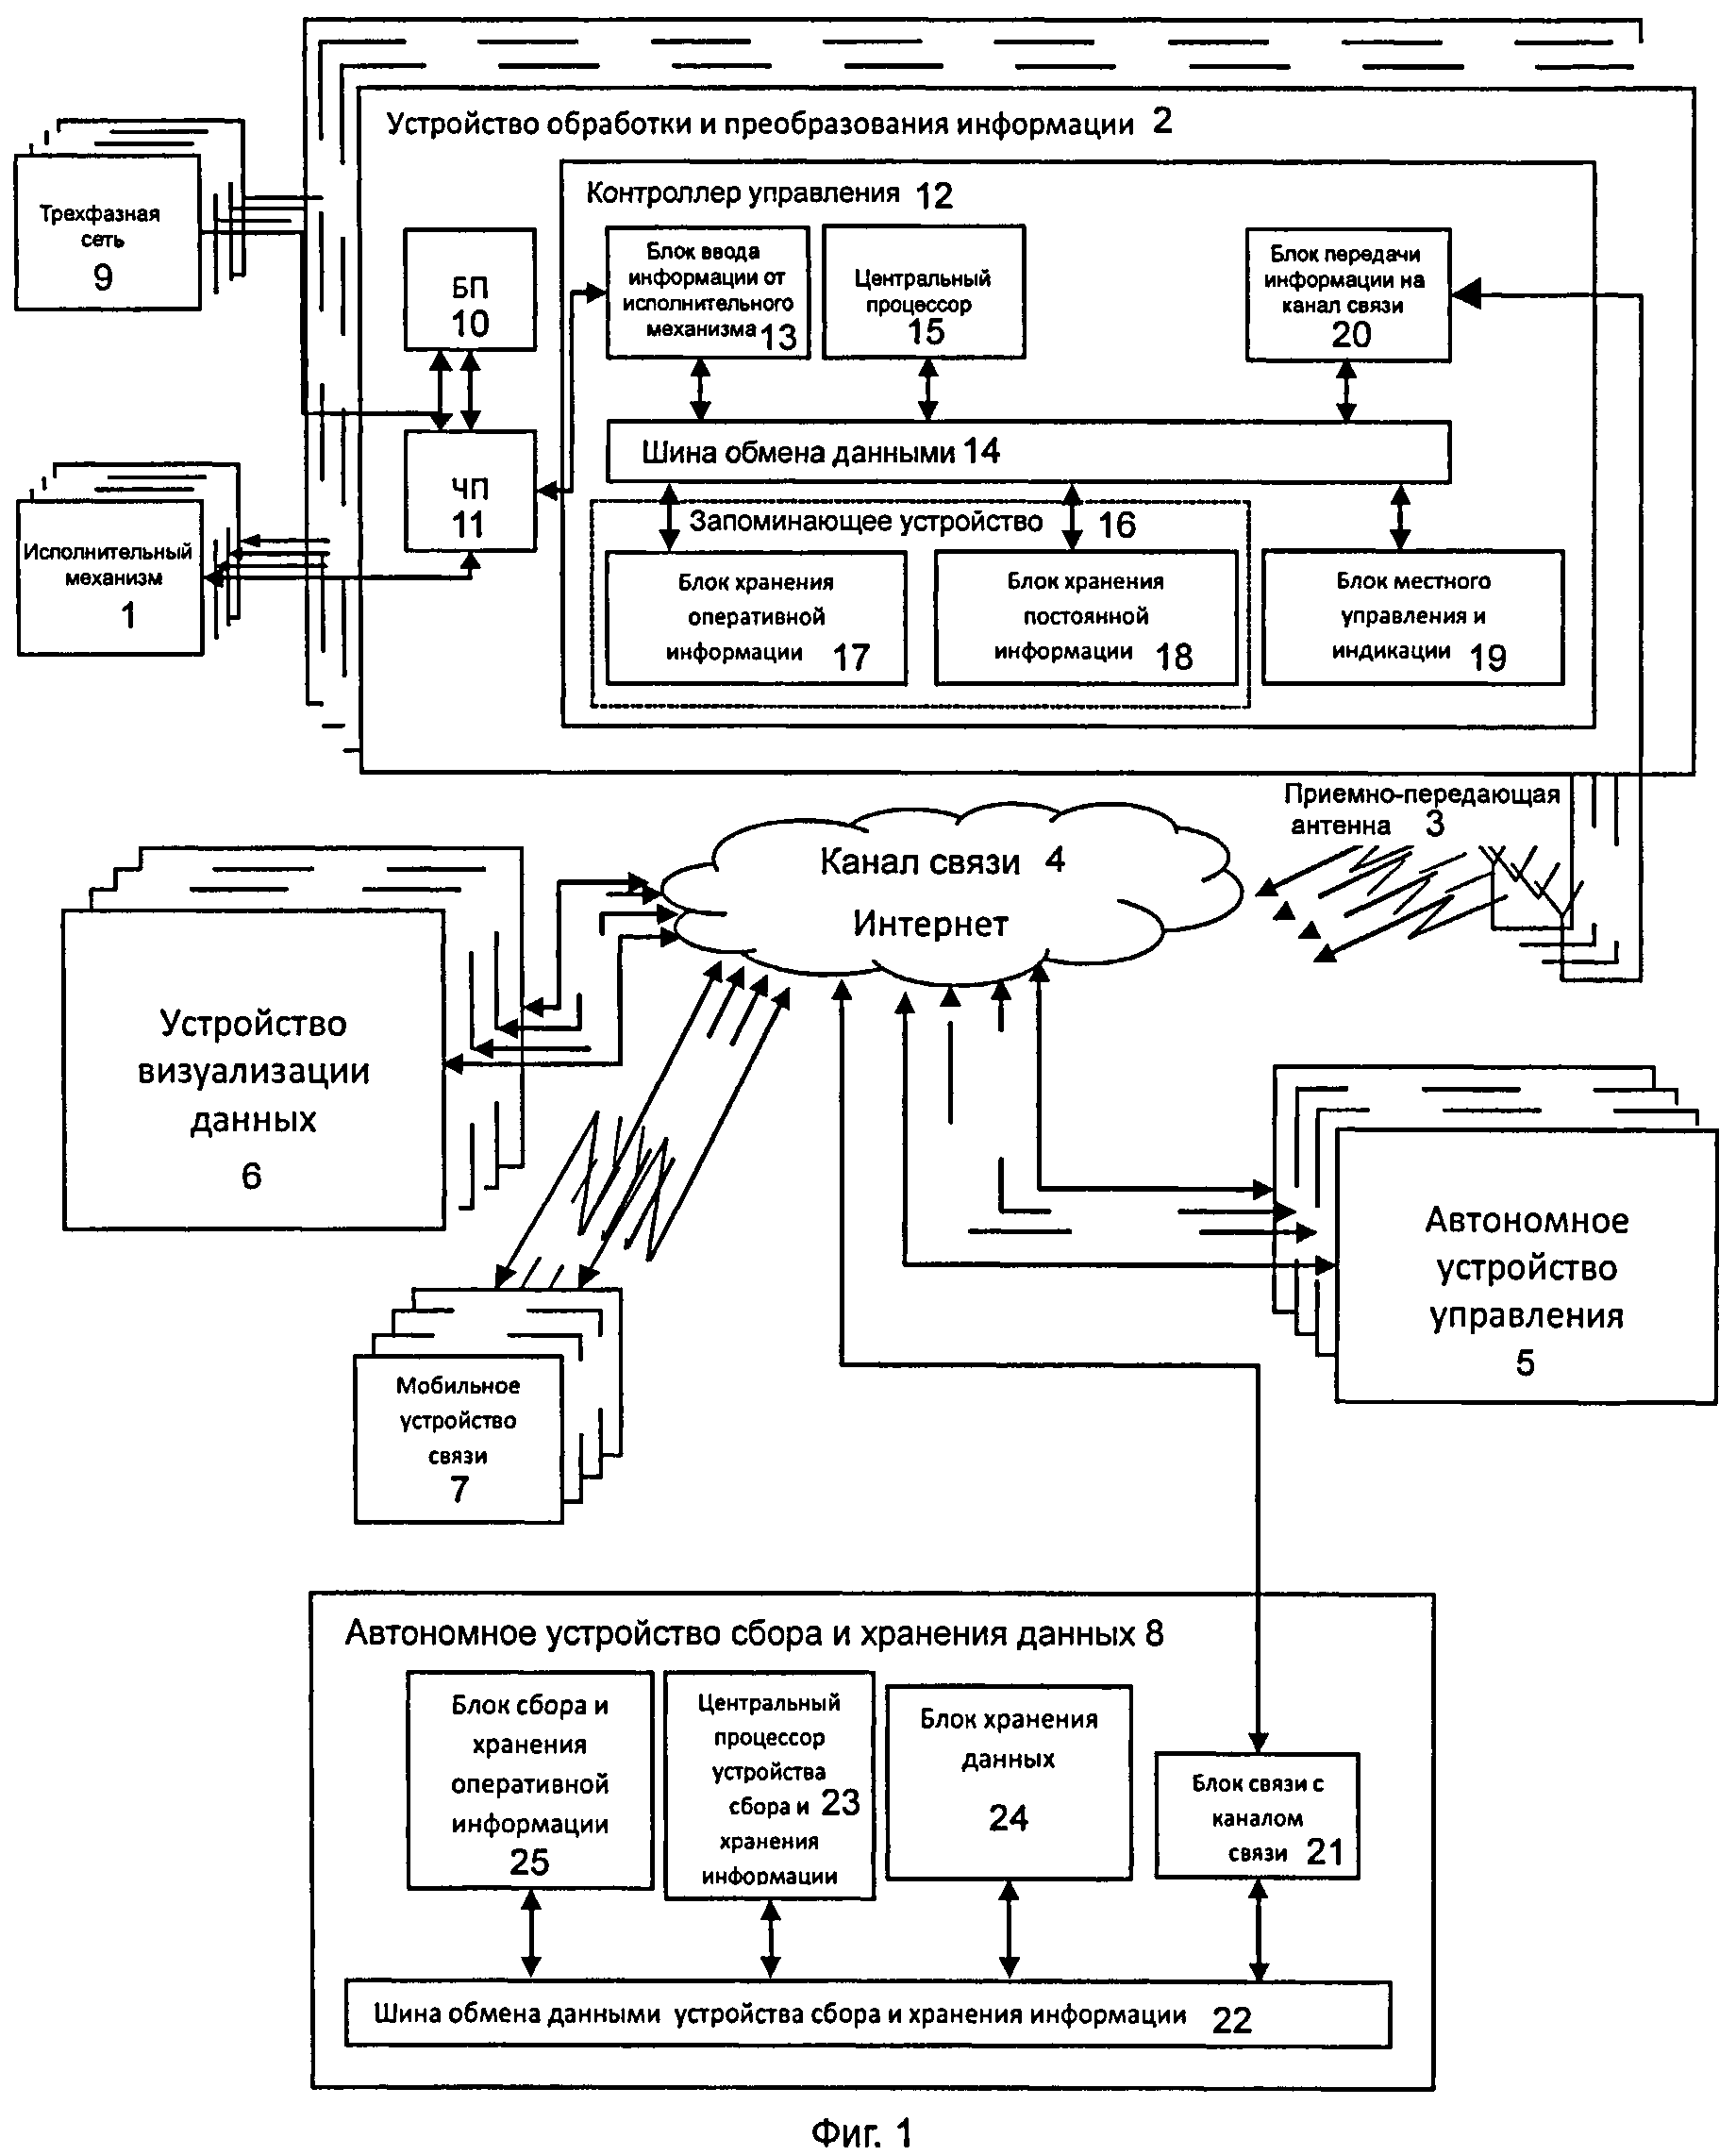 Модель автоматизированной системы